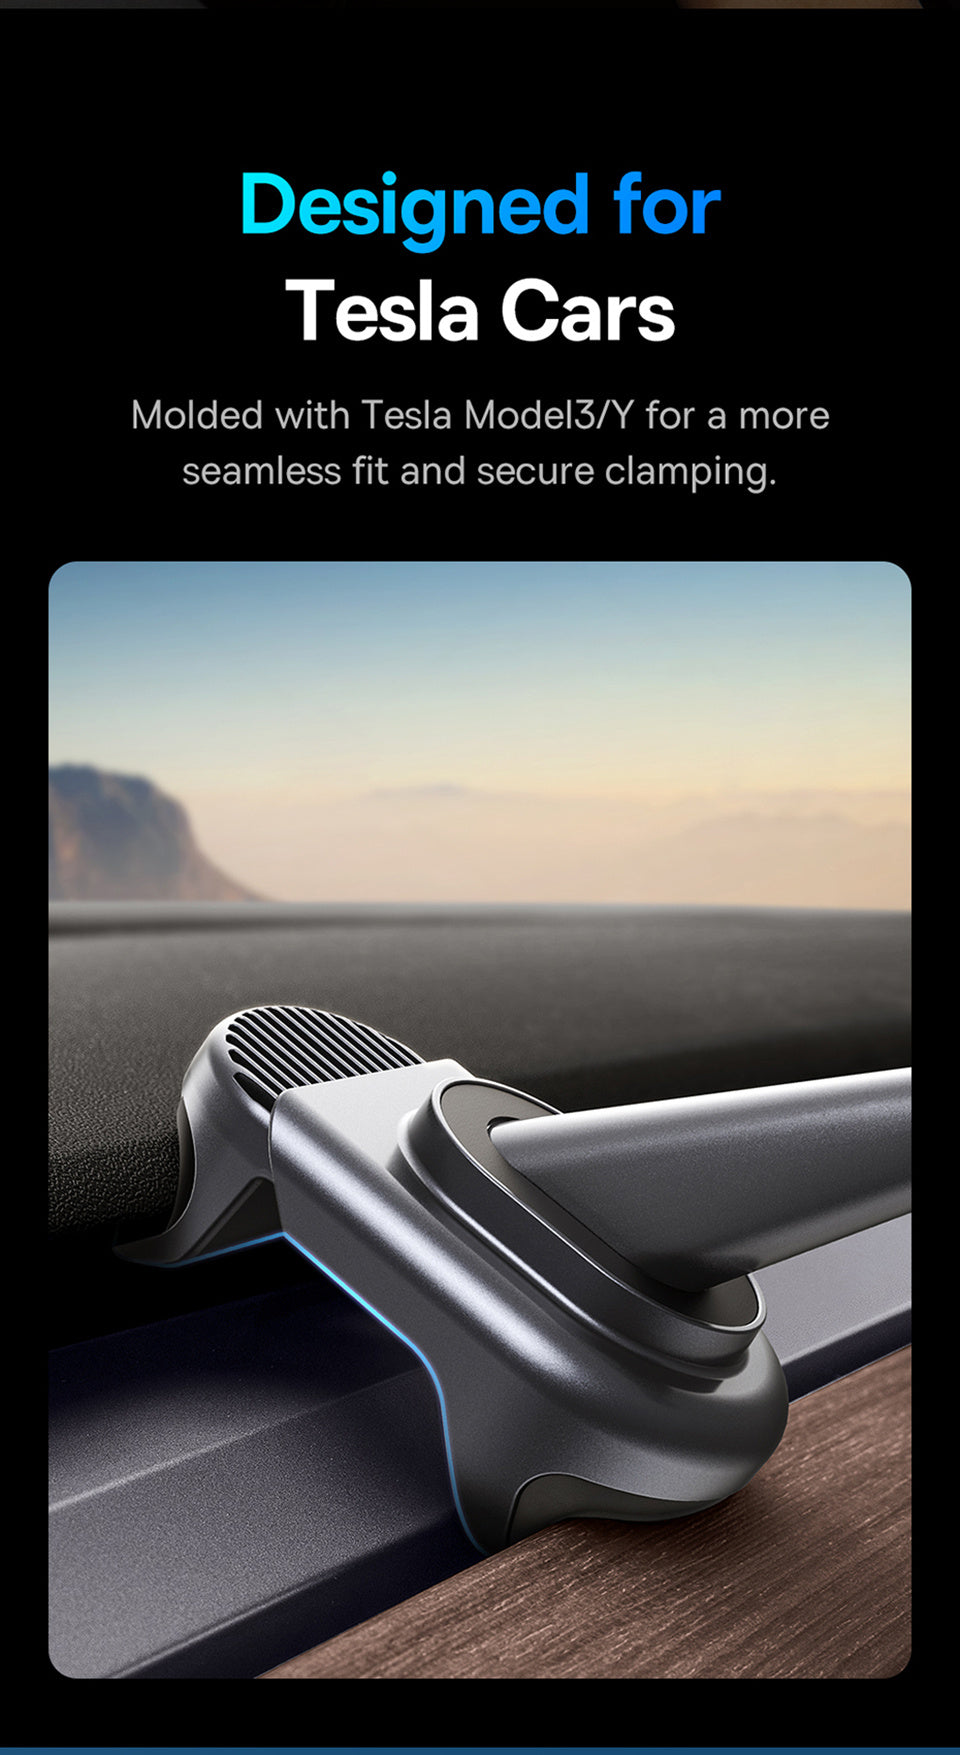 Bestellen Sie jetzt Ihre Tesla Model 3/Y Handyhalterung in Deutschland